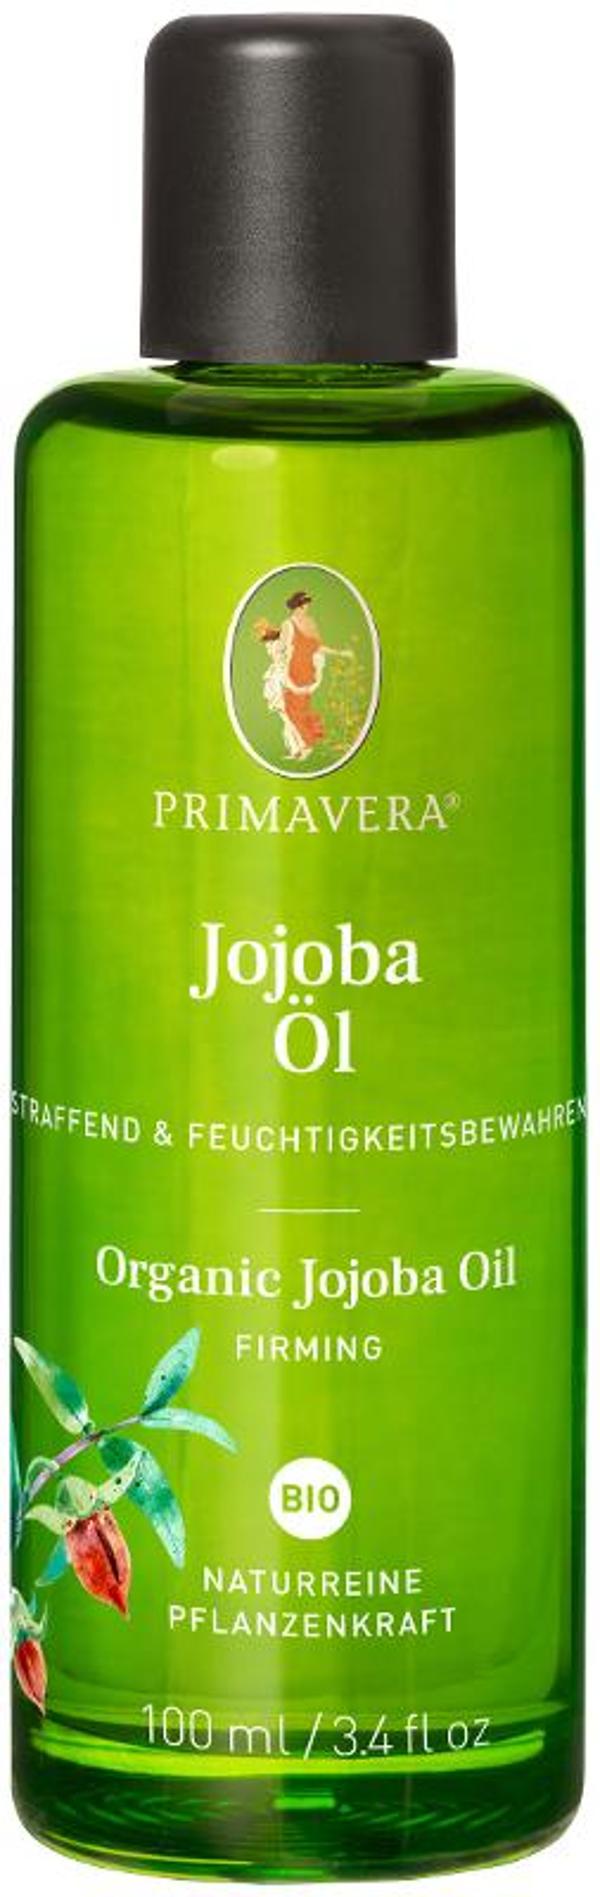 Produktfoto zu Jojobaöl 100 ml